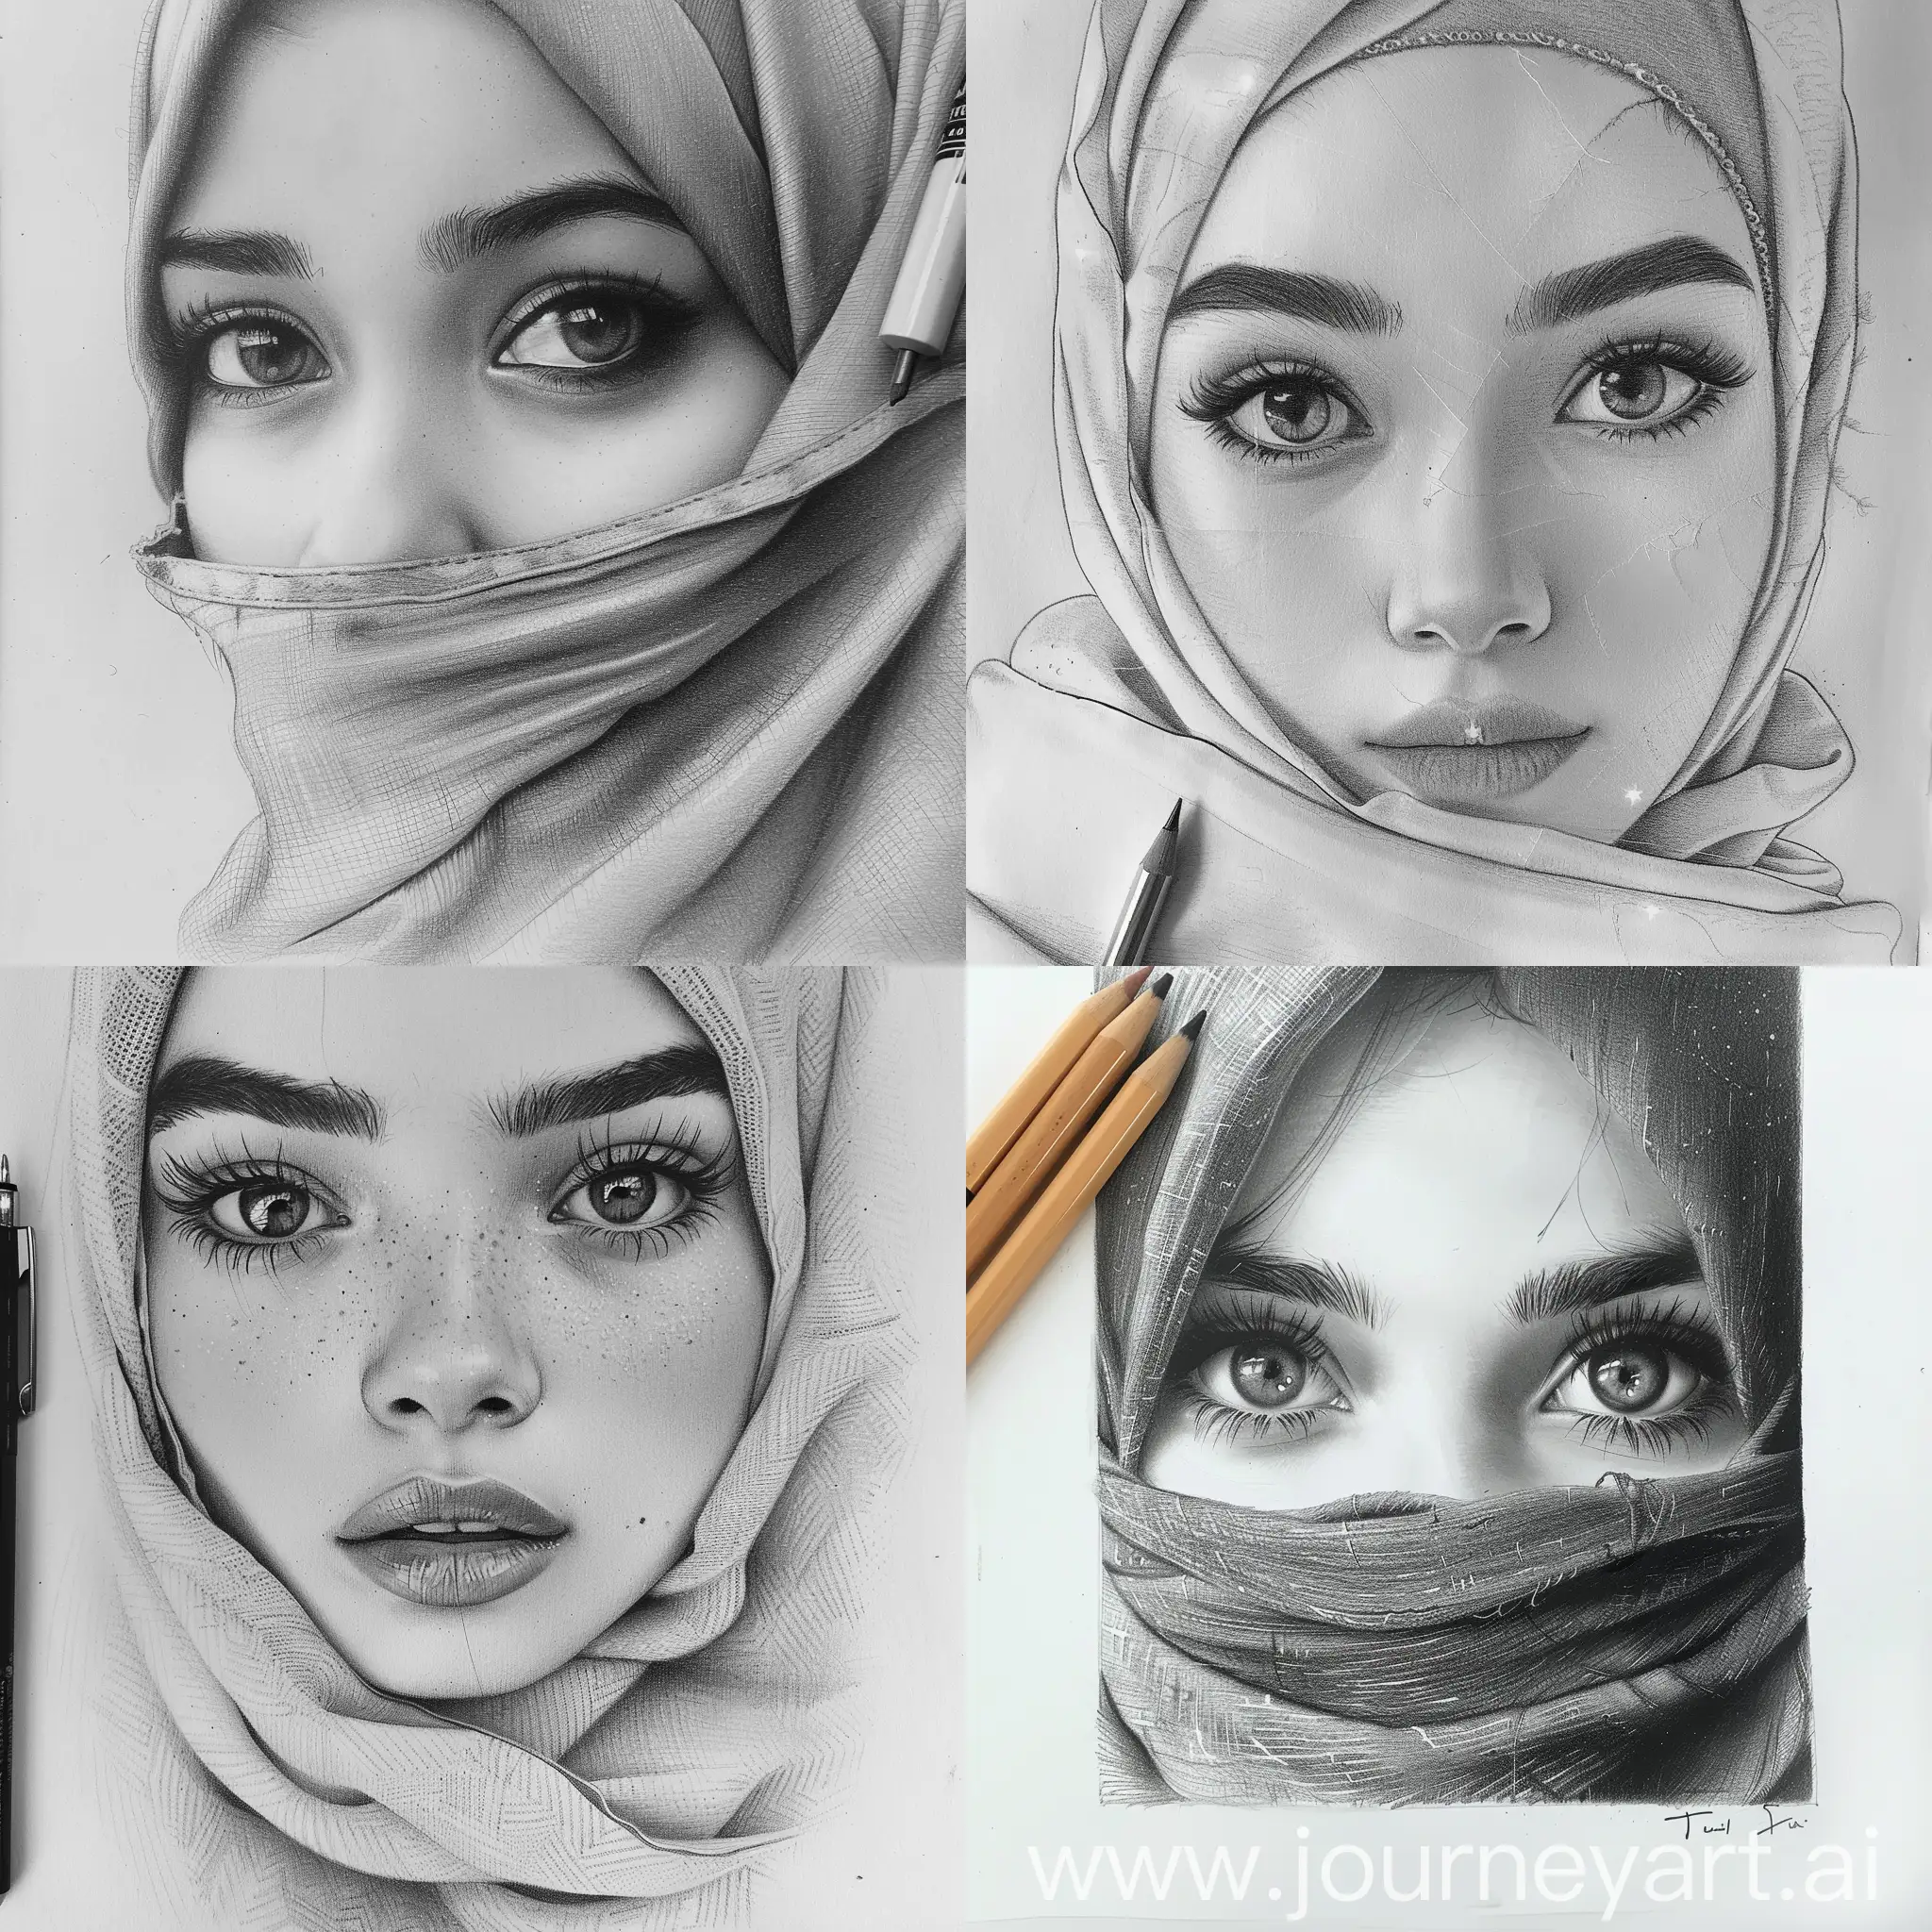 menggambar lukisan pensil remaja wanita hijab yang lucu.sangat detail